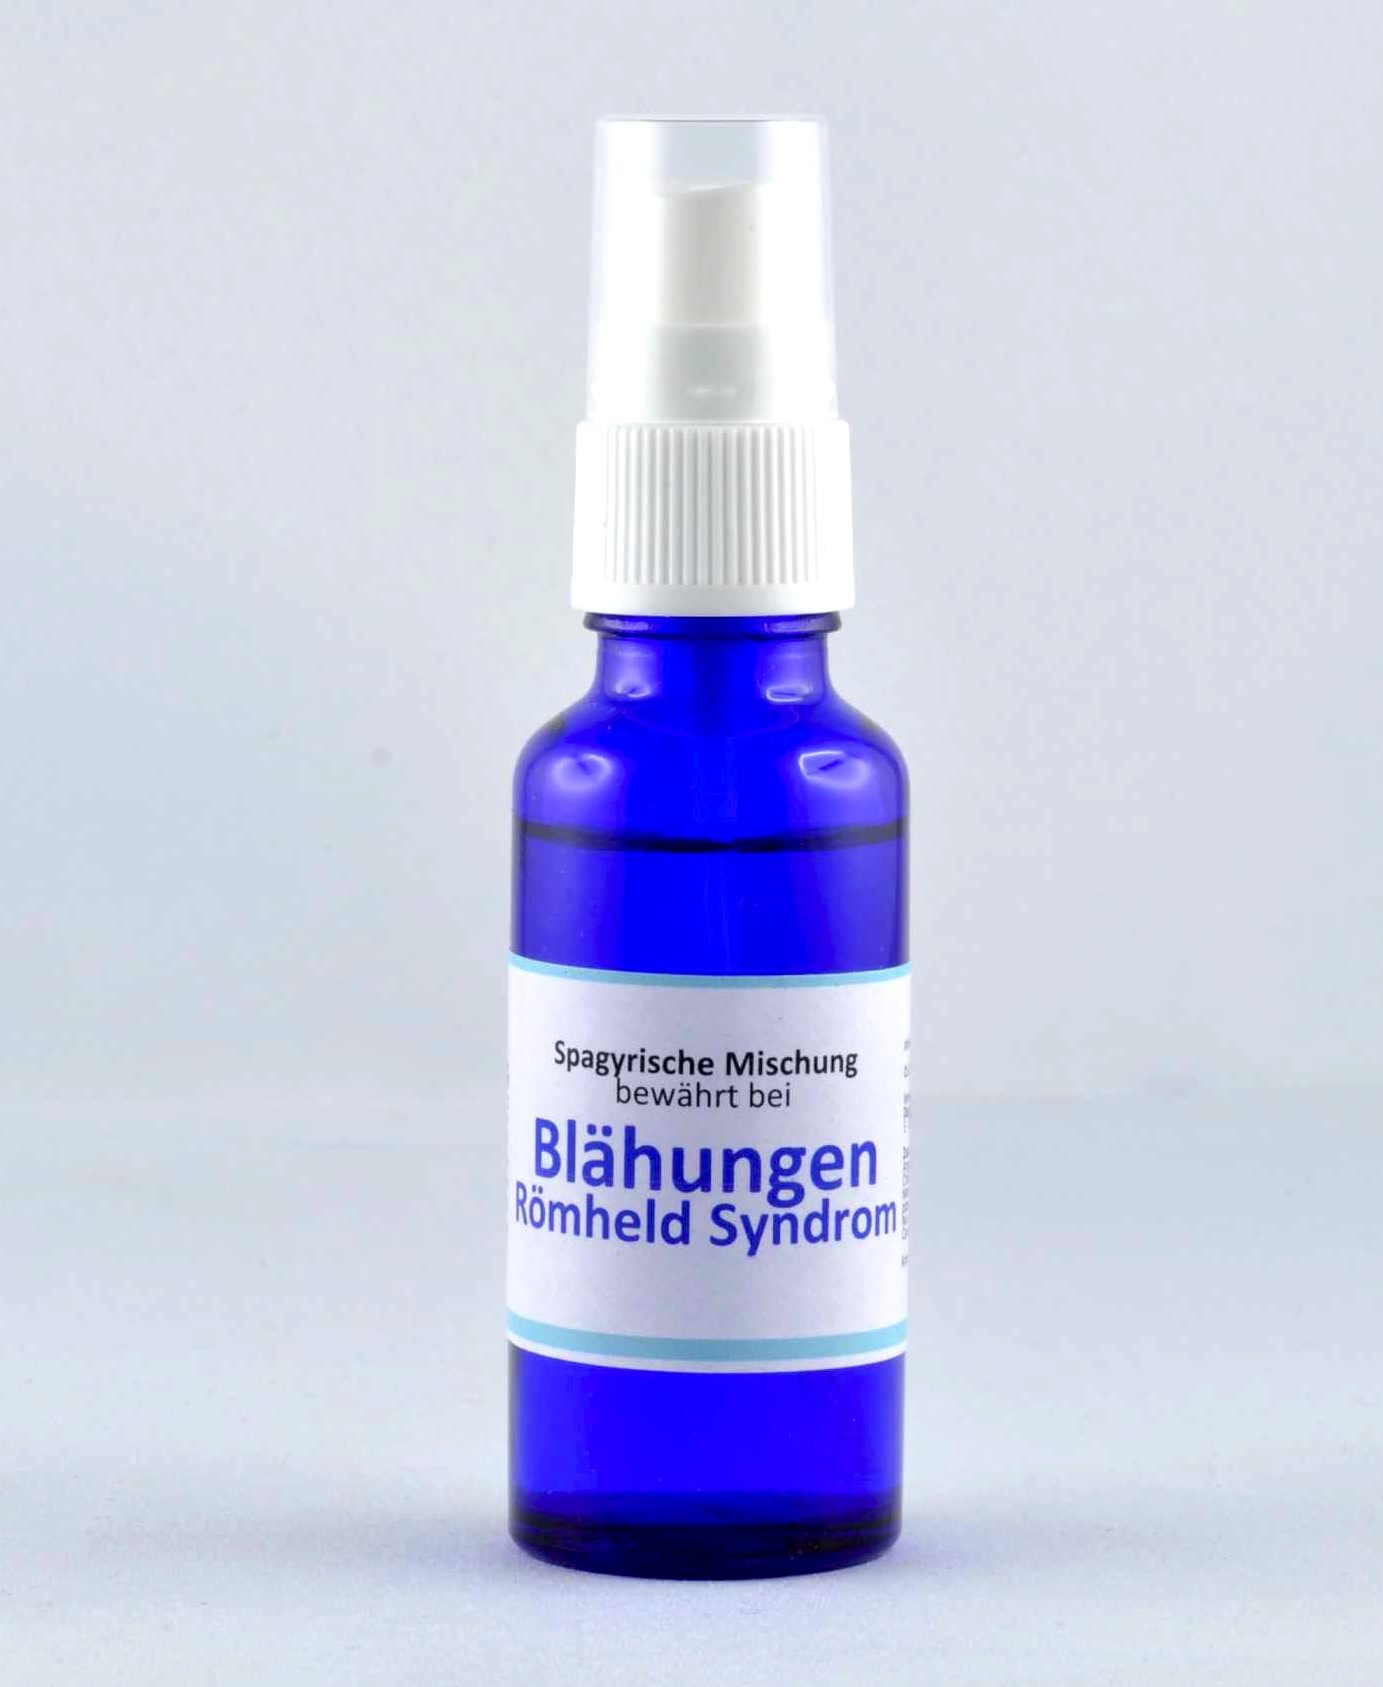 Natriumrhodizonat - Blei-Test-Reagenz; verwendet: Belgium